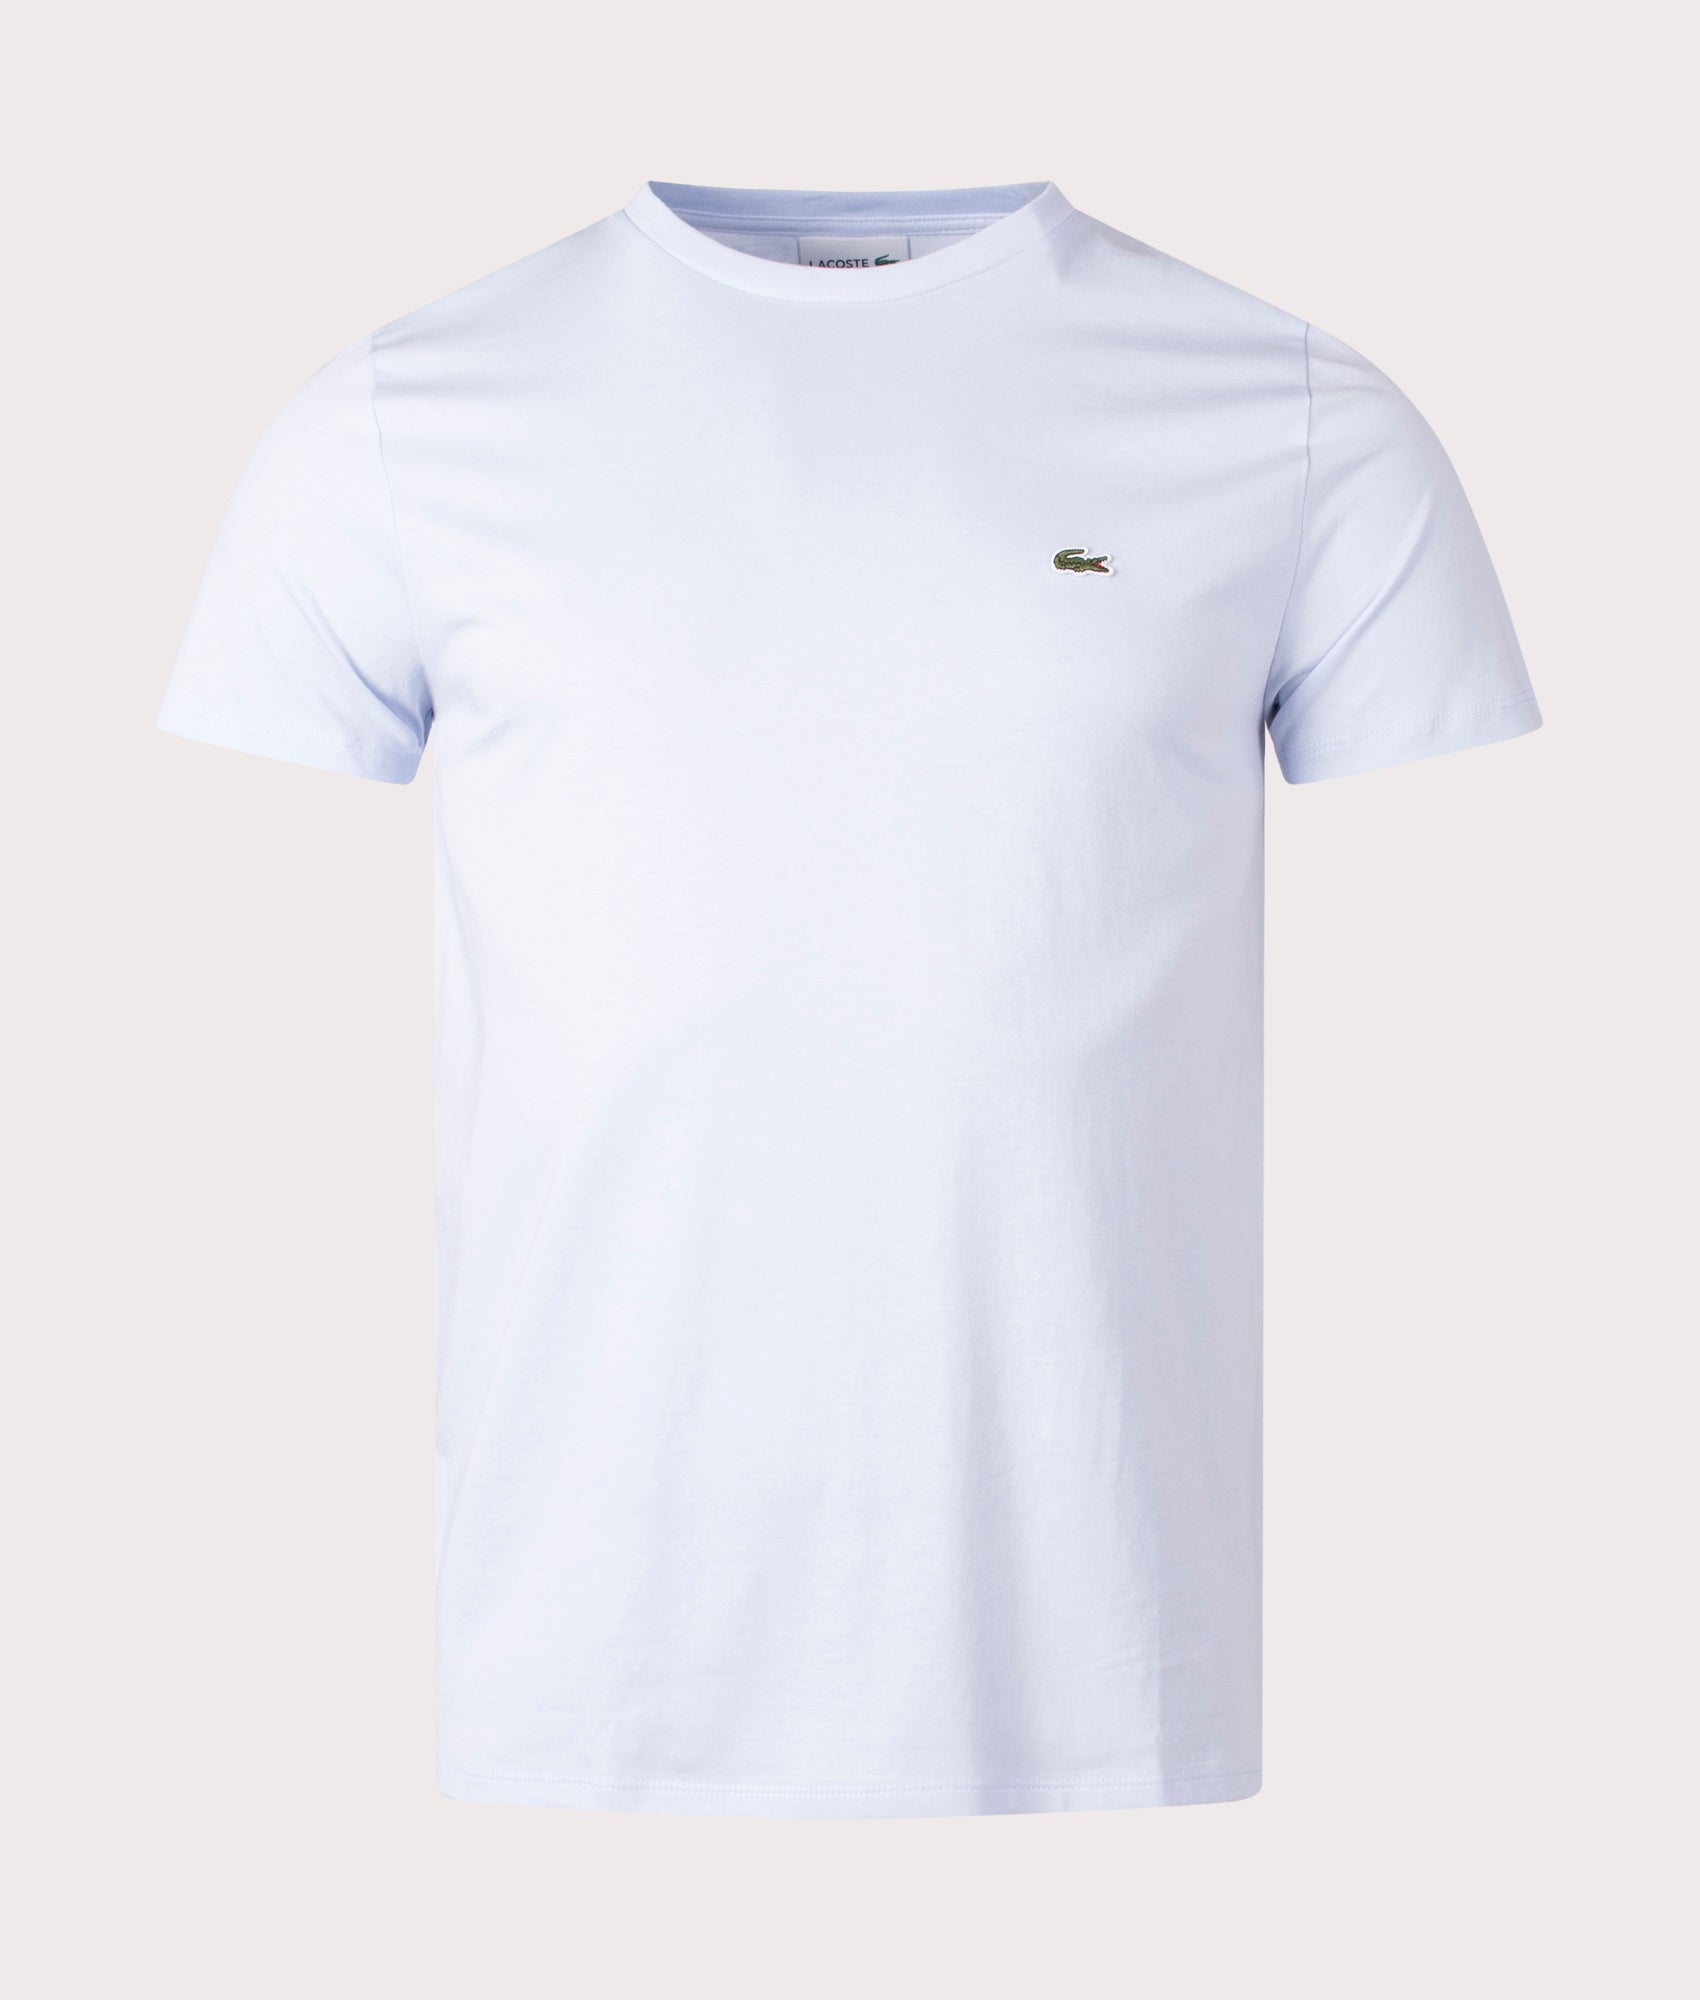 Lacoste Mens Pima Cotton Croc Logo T-Shirt - Colour: J2G Phoenix Blue - Size: 5/L